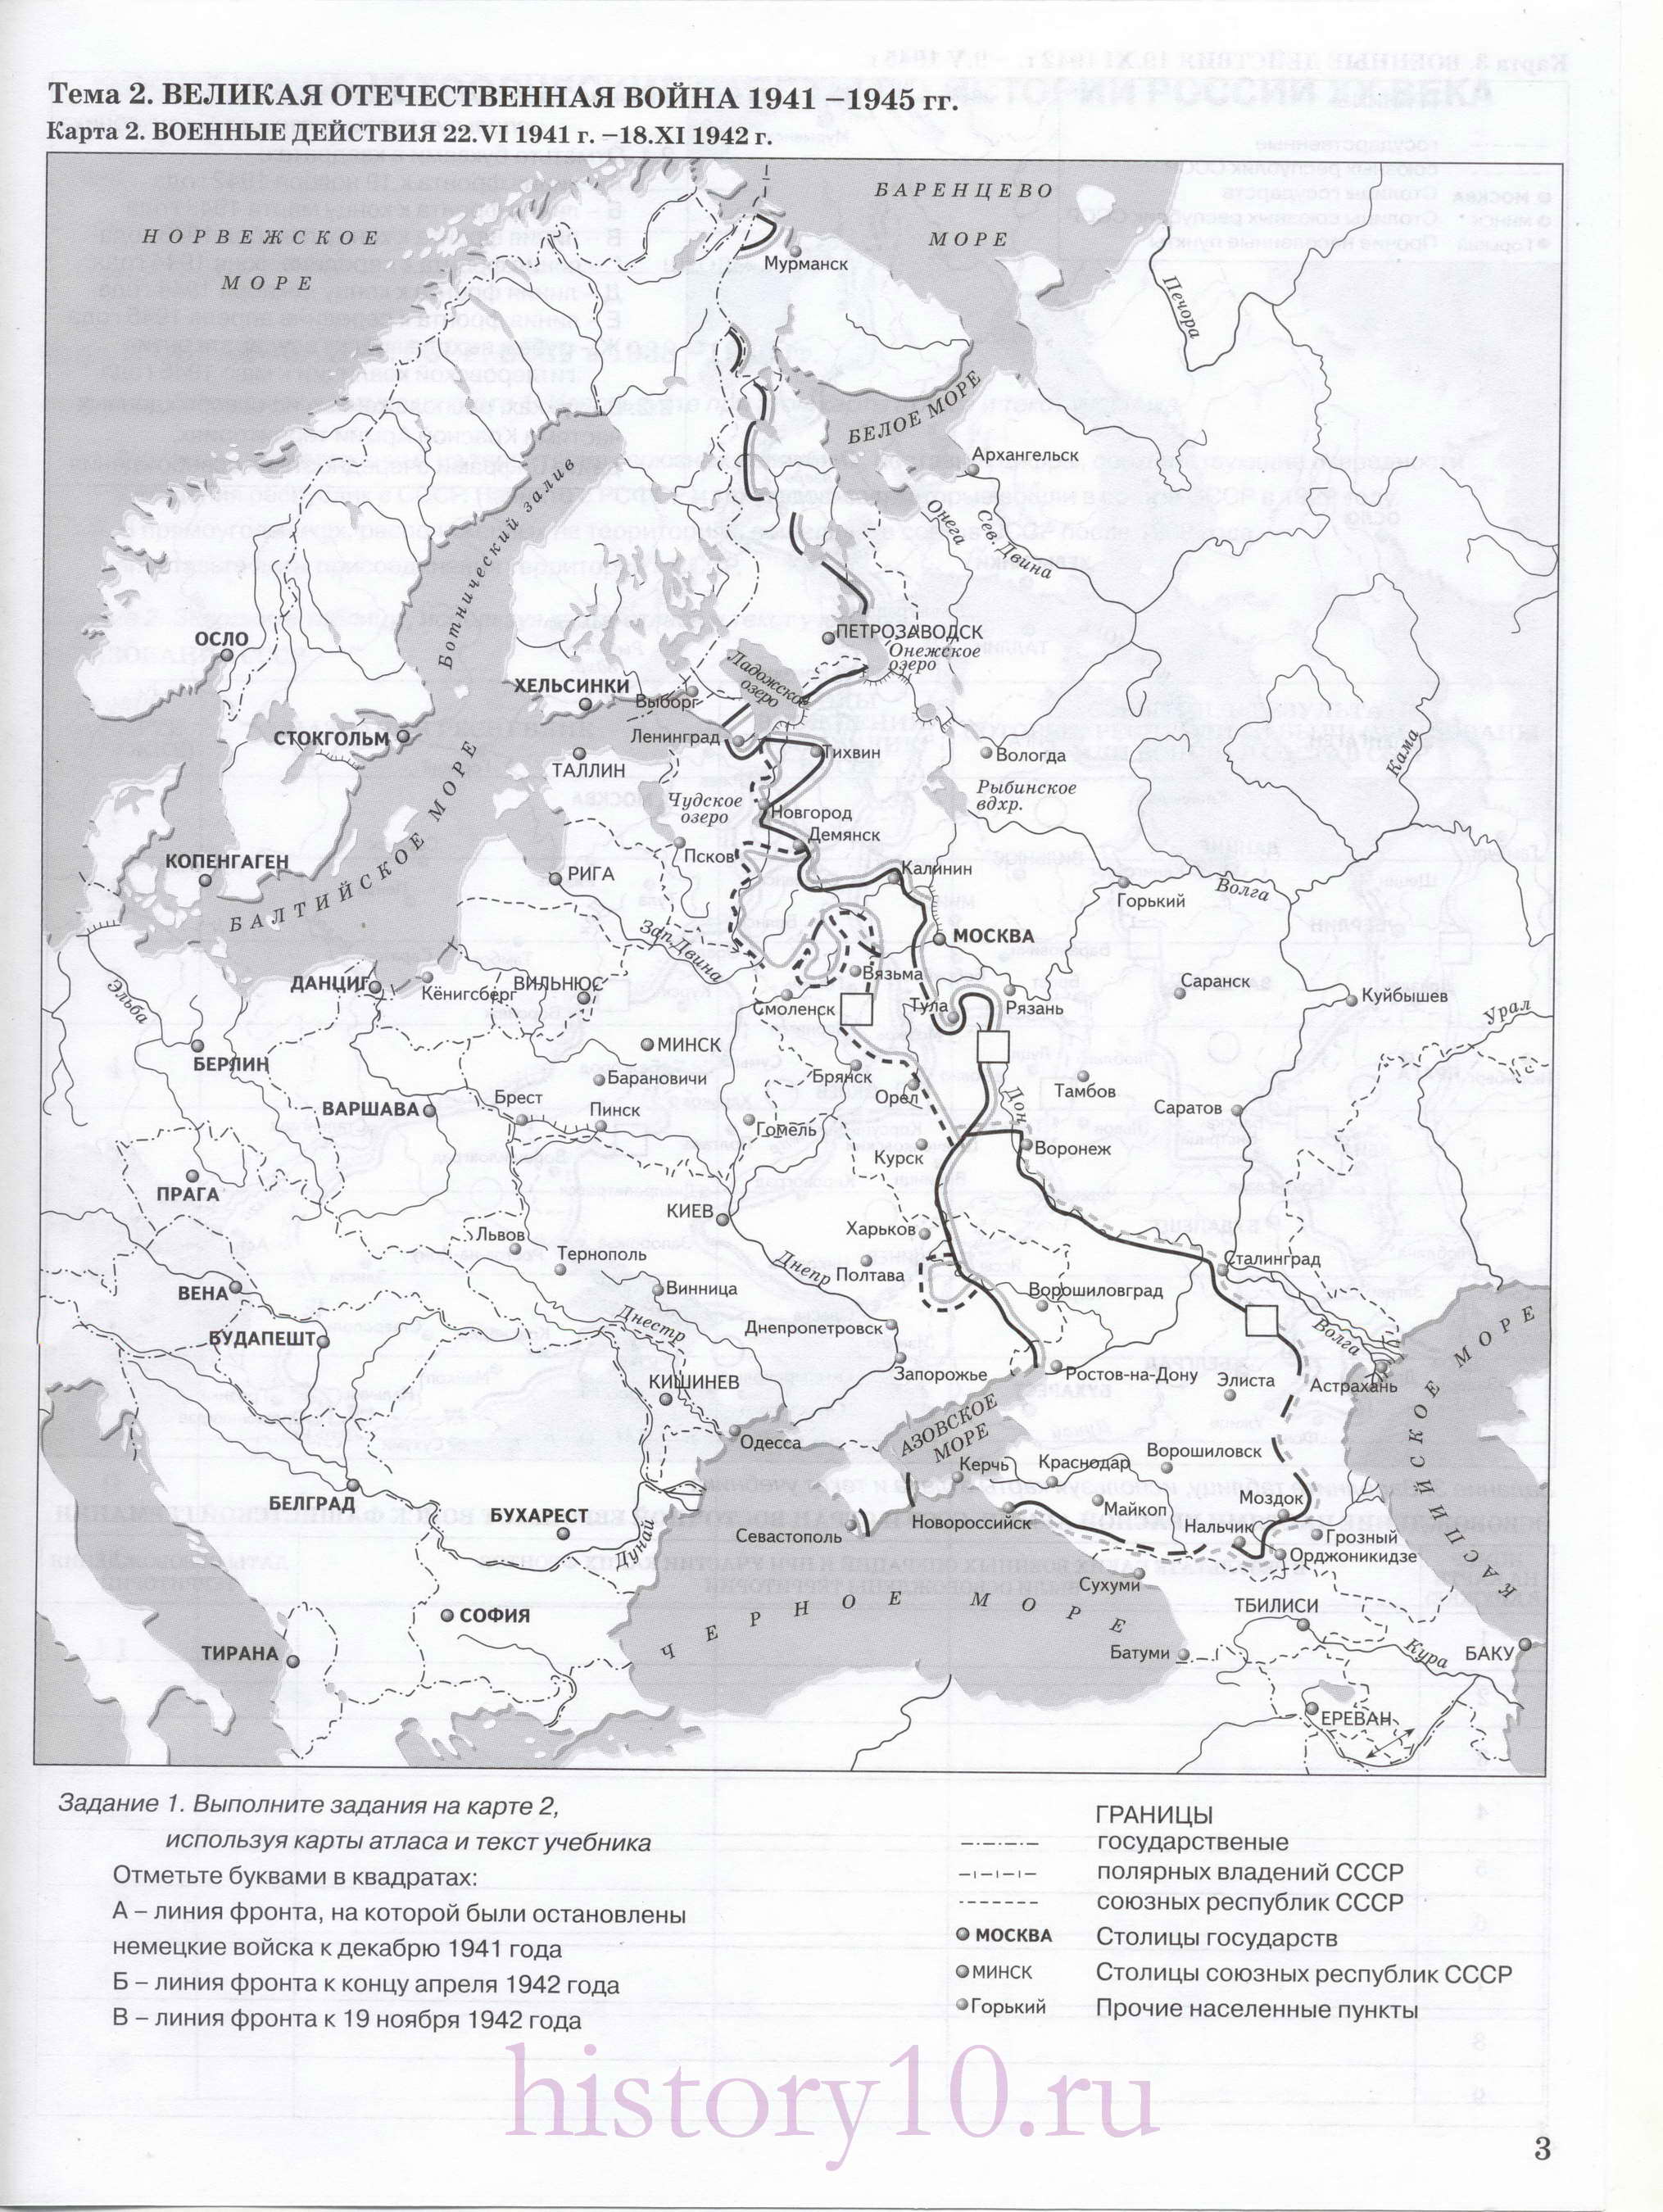 Тема 2 Великая отечественная война 1941-1945. Военные действия в 1941-1942годах. Карта военных действий в 1942-1945